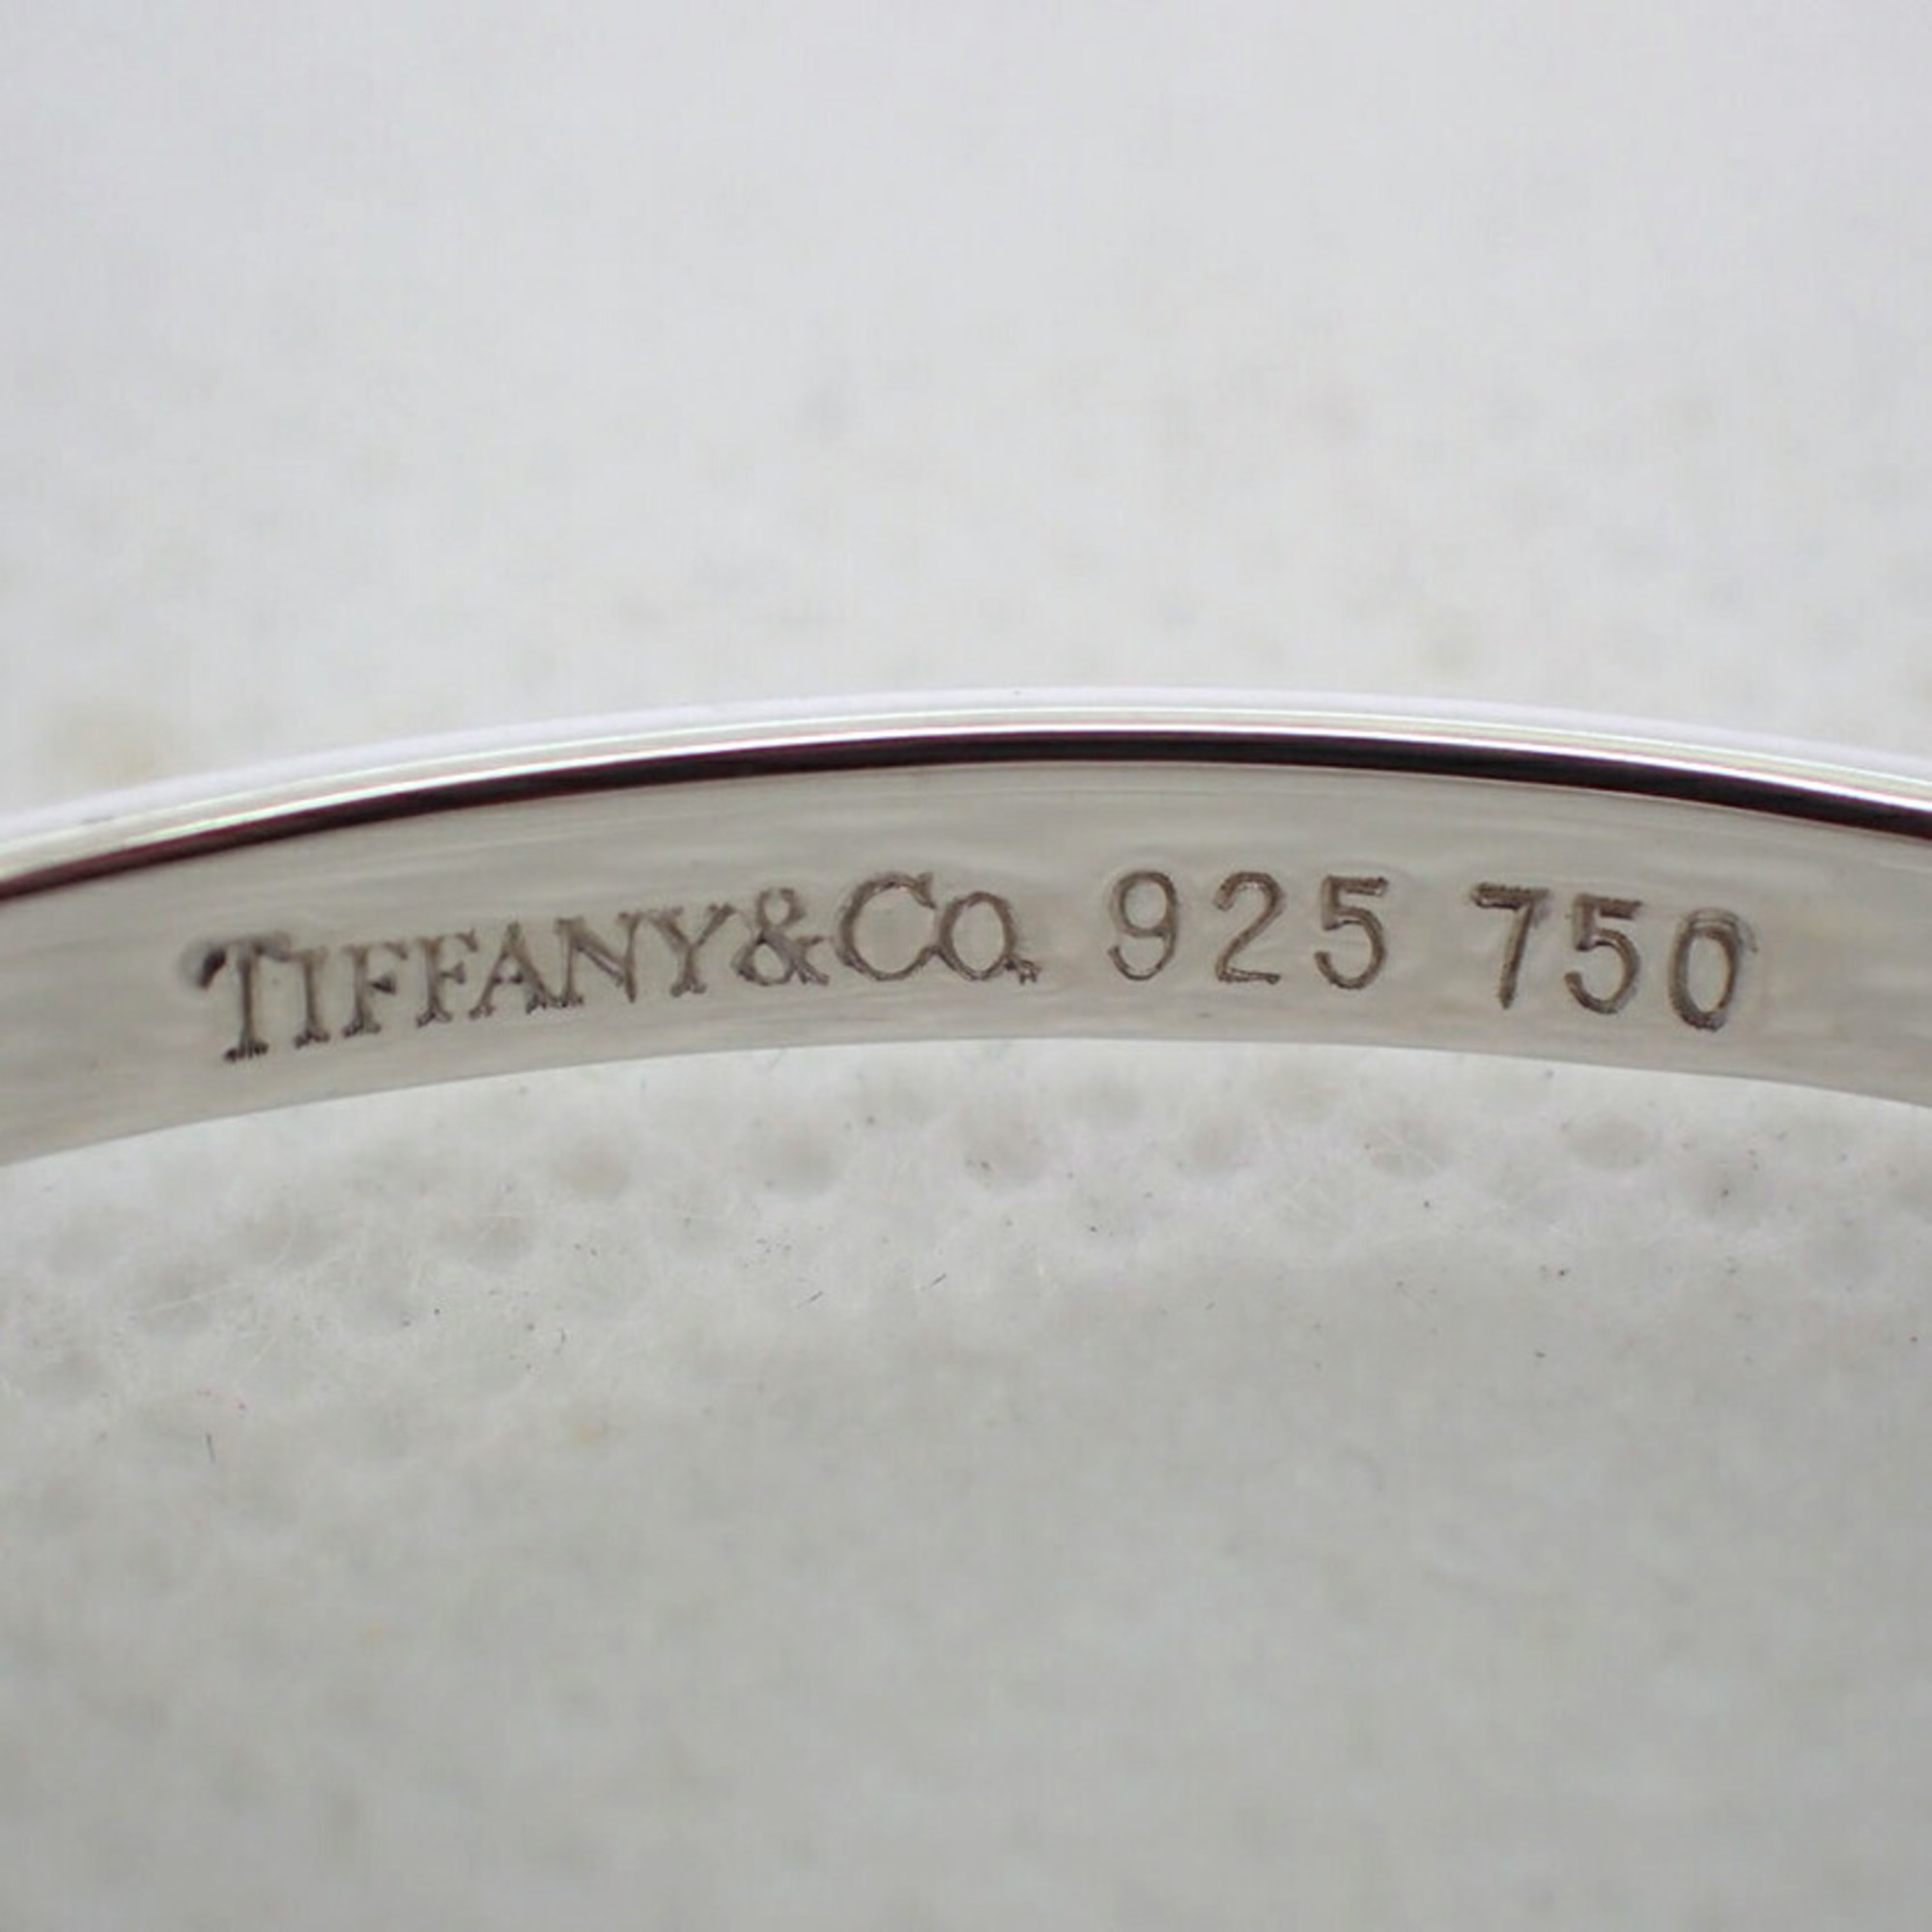 TIFFANY Tiffany 925 750 combination hook & eye bangle